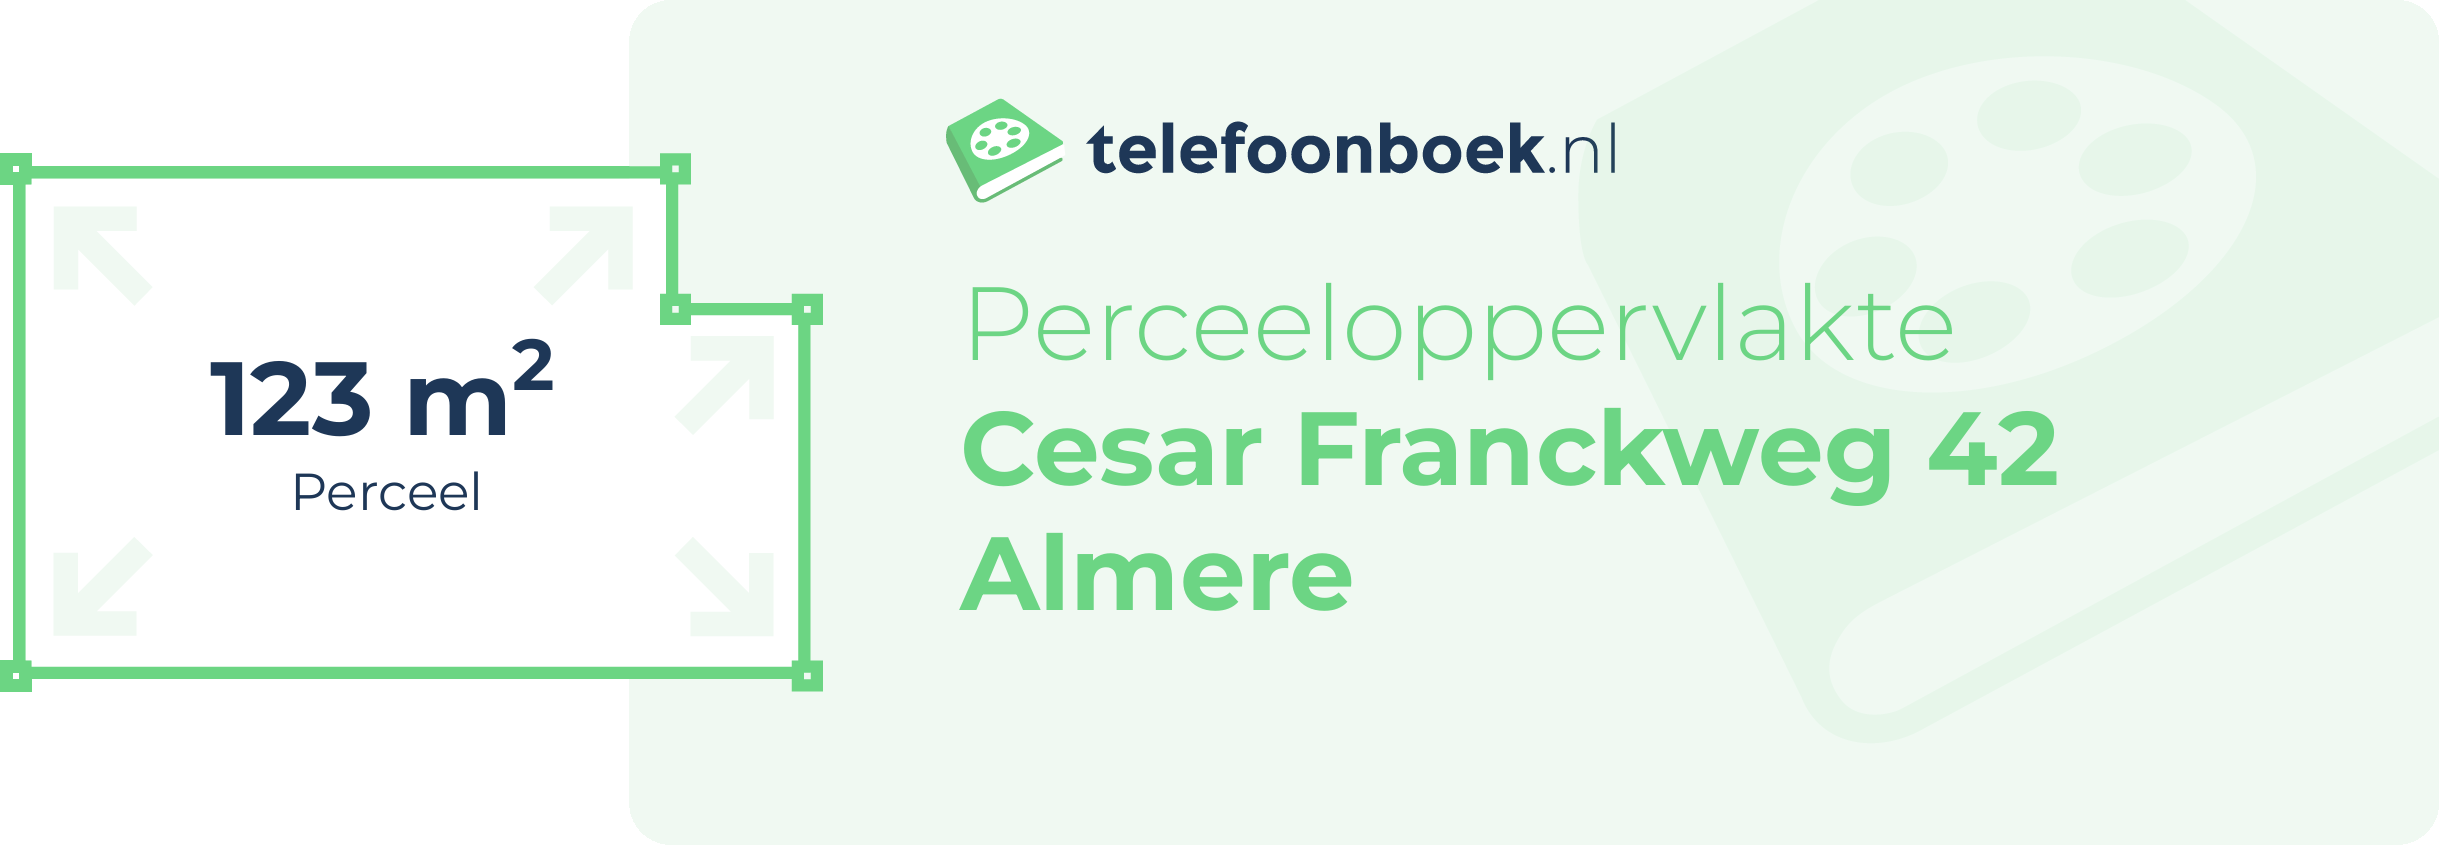 Perceeloppervlakte Cesar Franckweg 42 Almere